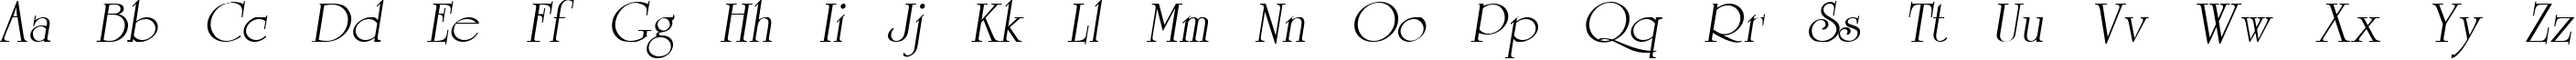 Пример написания английского алфавита шрифтом AGUniversityCyr Oblique Medium